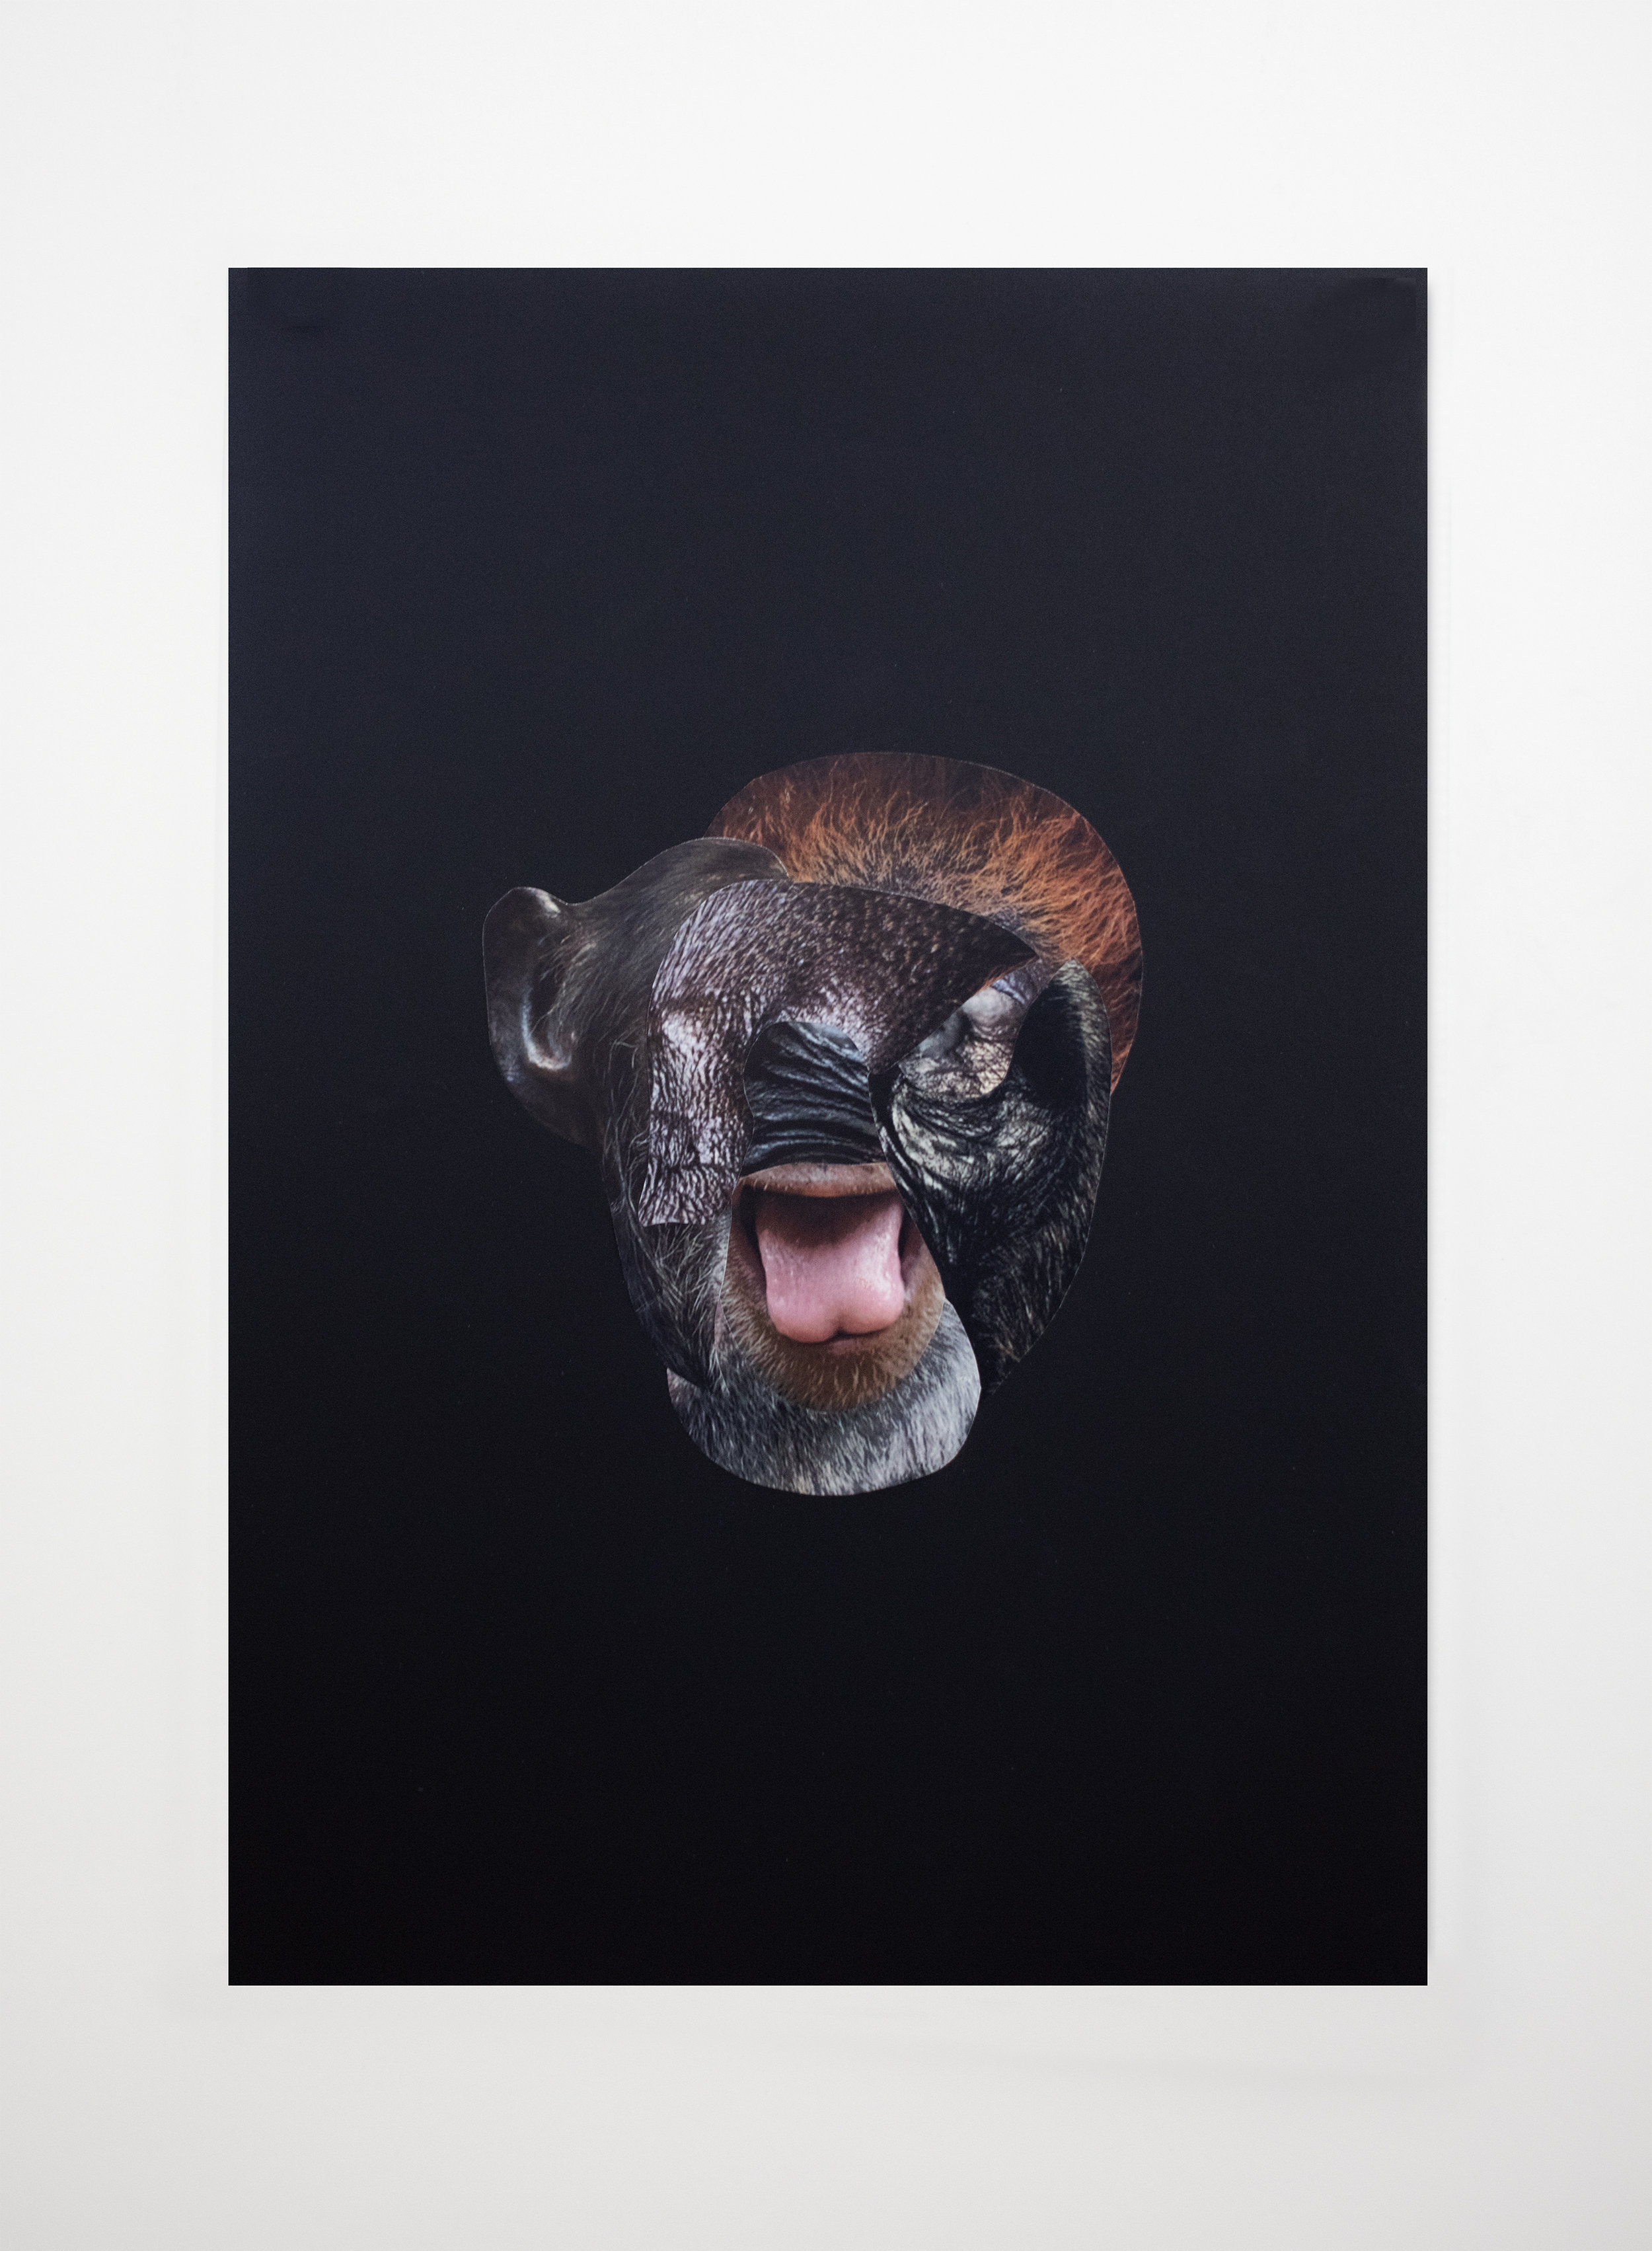  Les restes No.01  Collage sur papier noir / Collage on black paper  13 3/4 X 19 3/4 in / 33 X 50 cm   